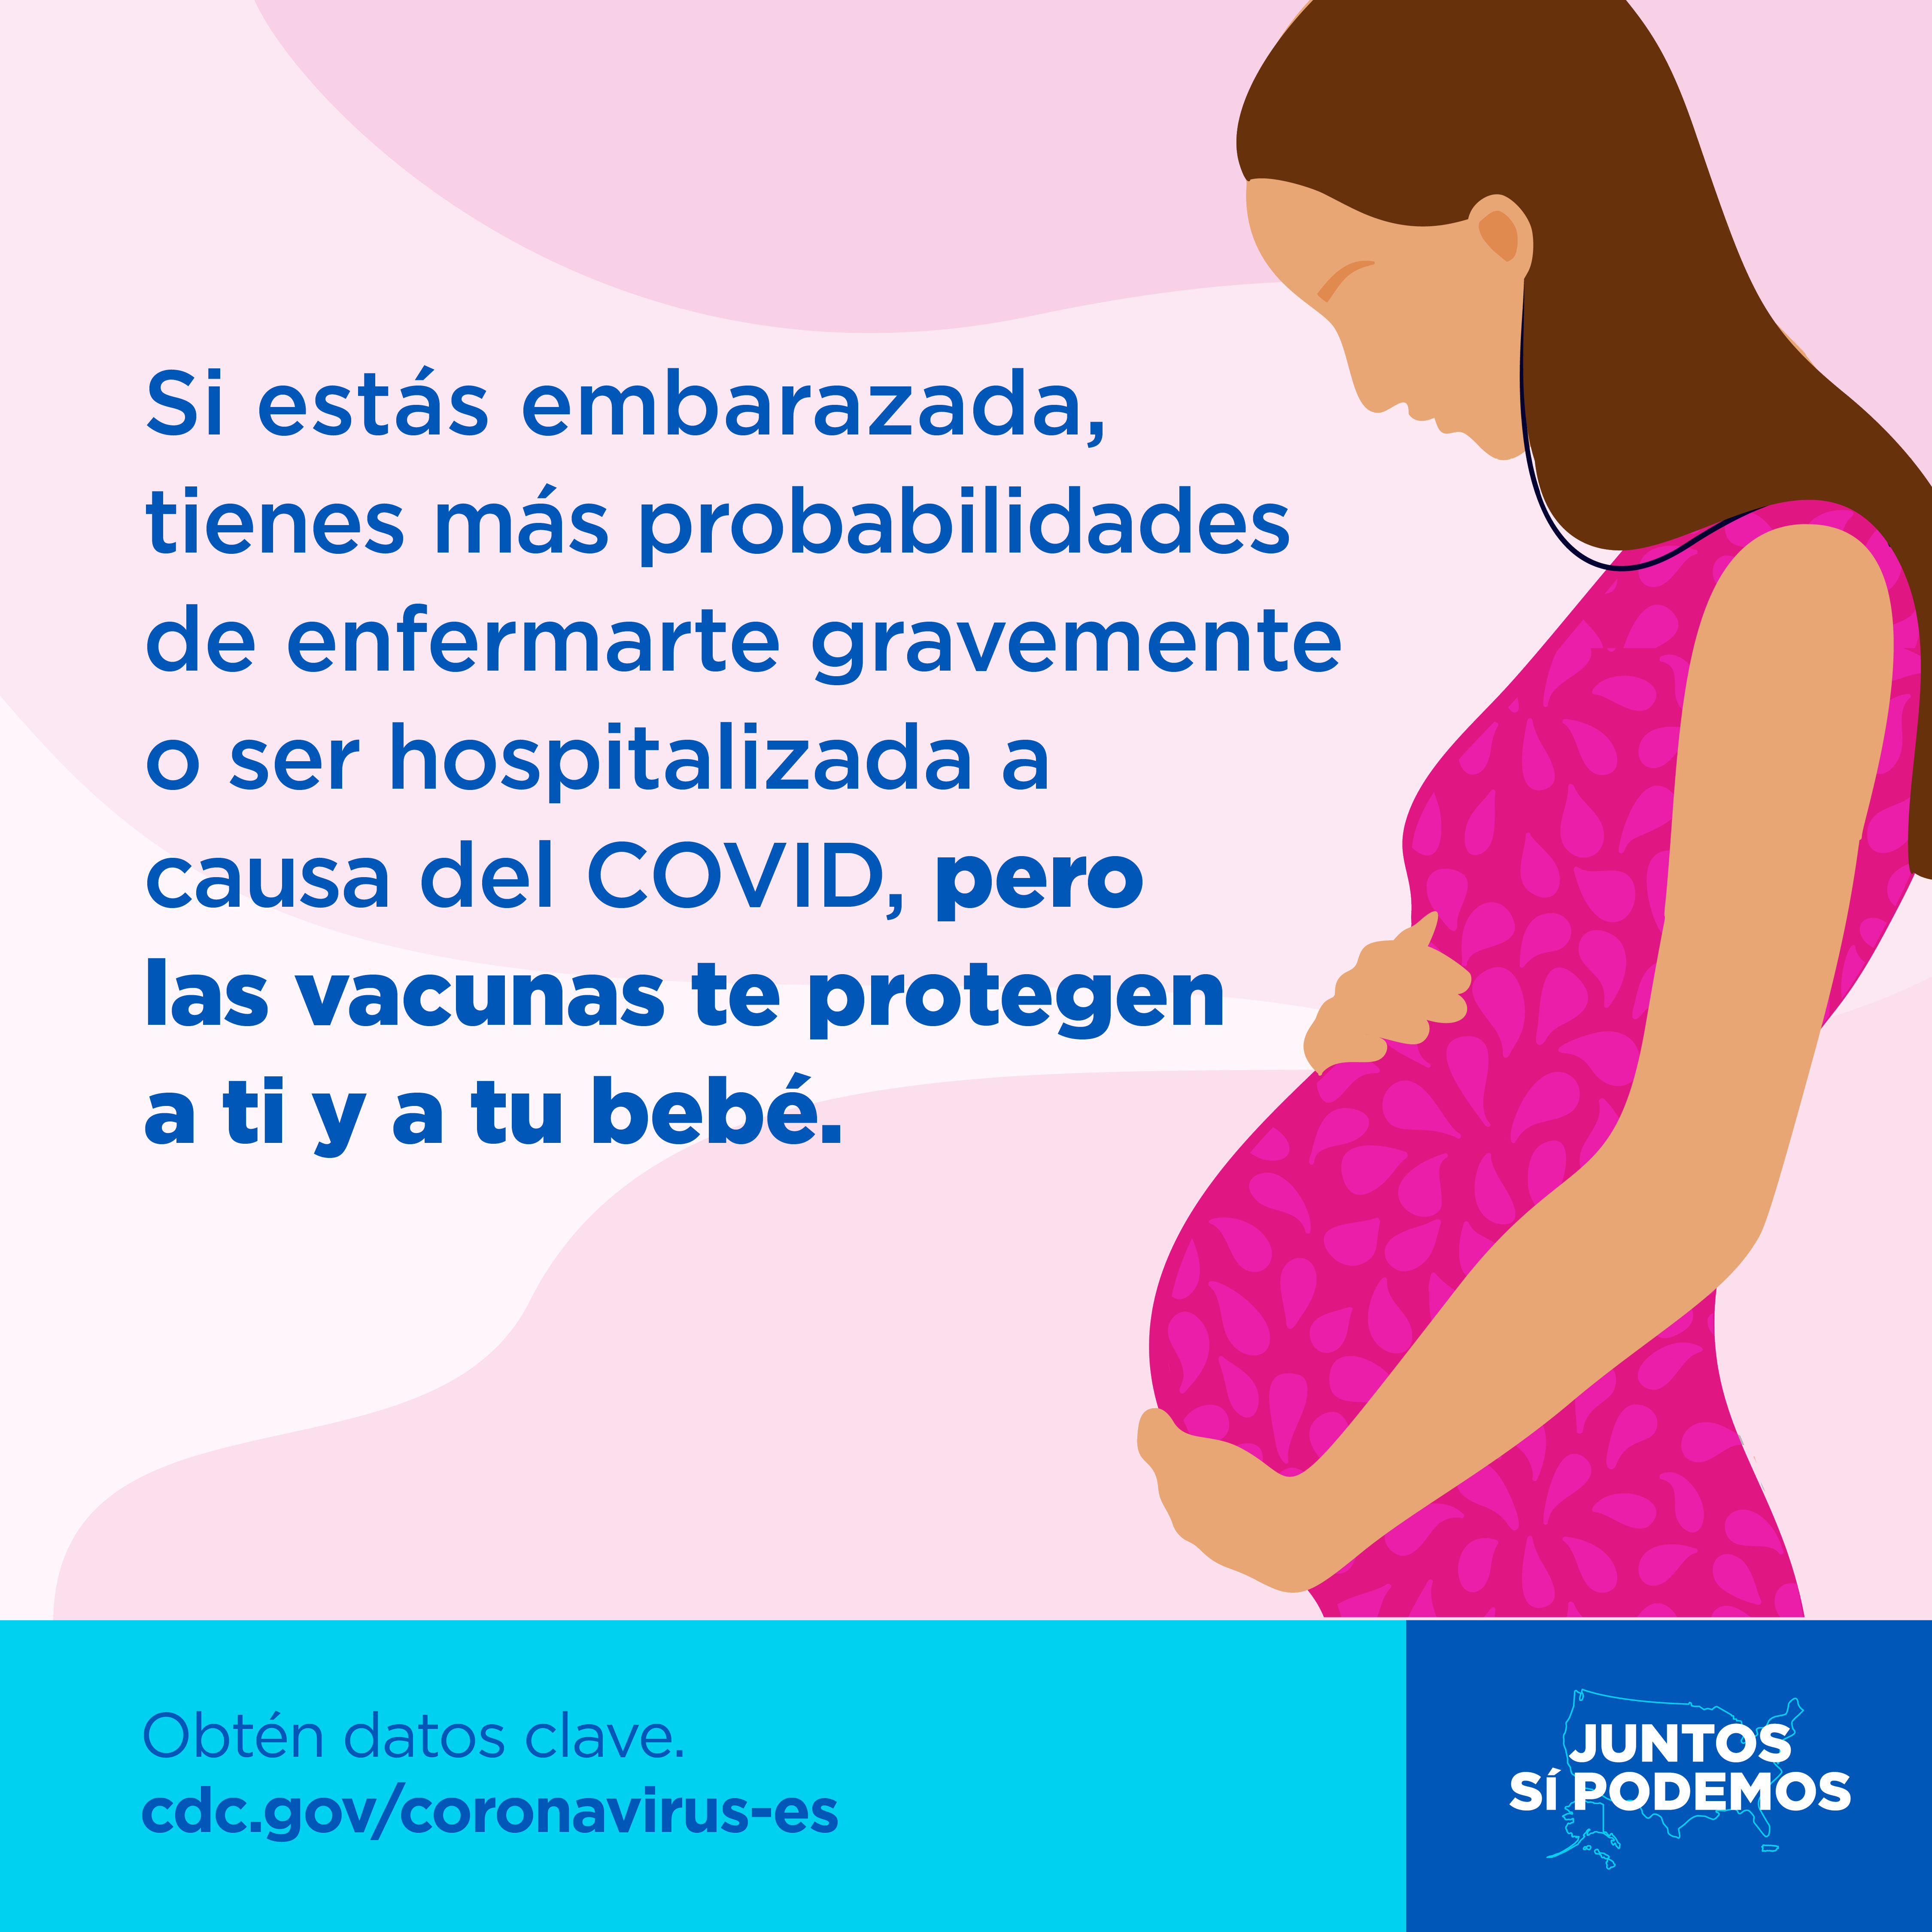 Contraer COVID durante el embarazo es peligroso, pero la vacuna contra el COVID ayuda a protegerlos a ambos.